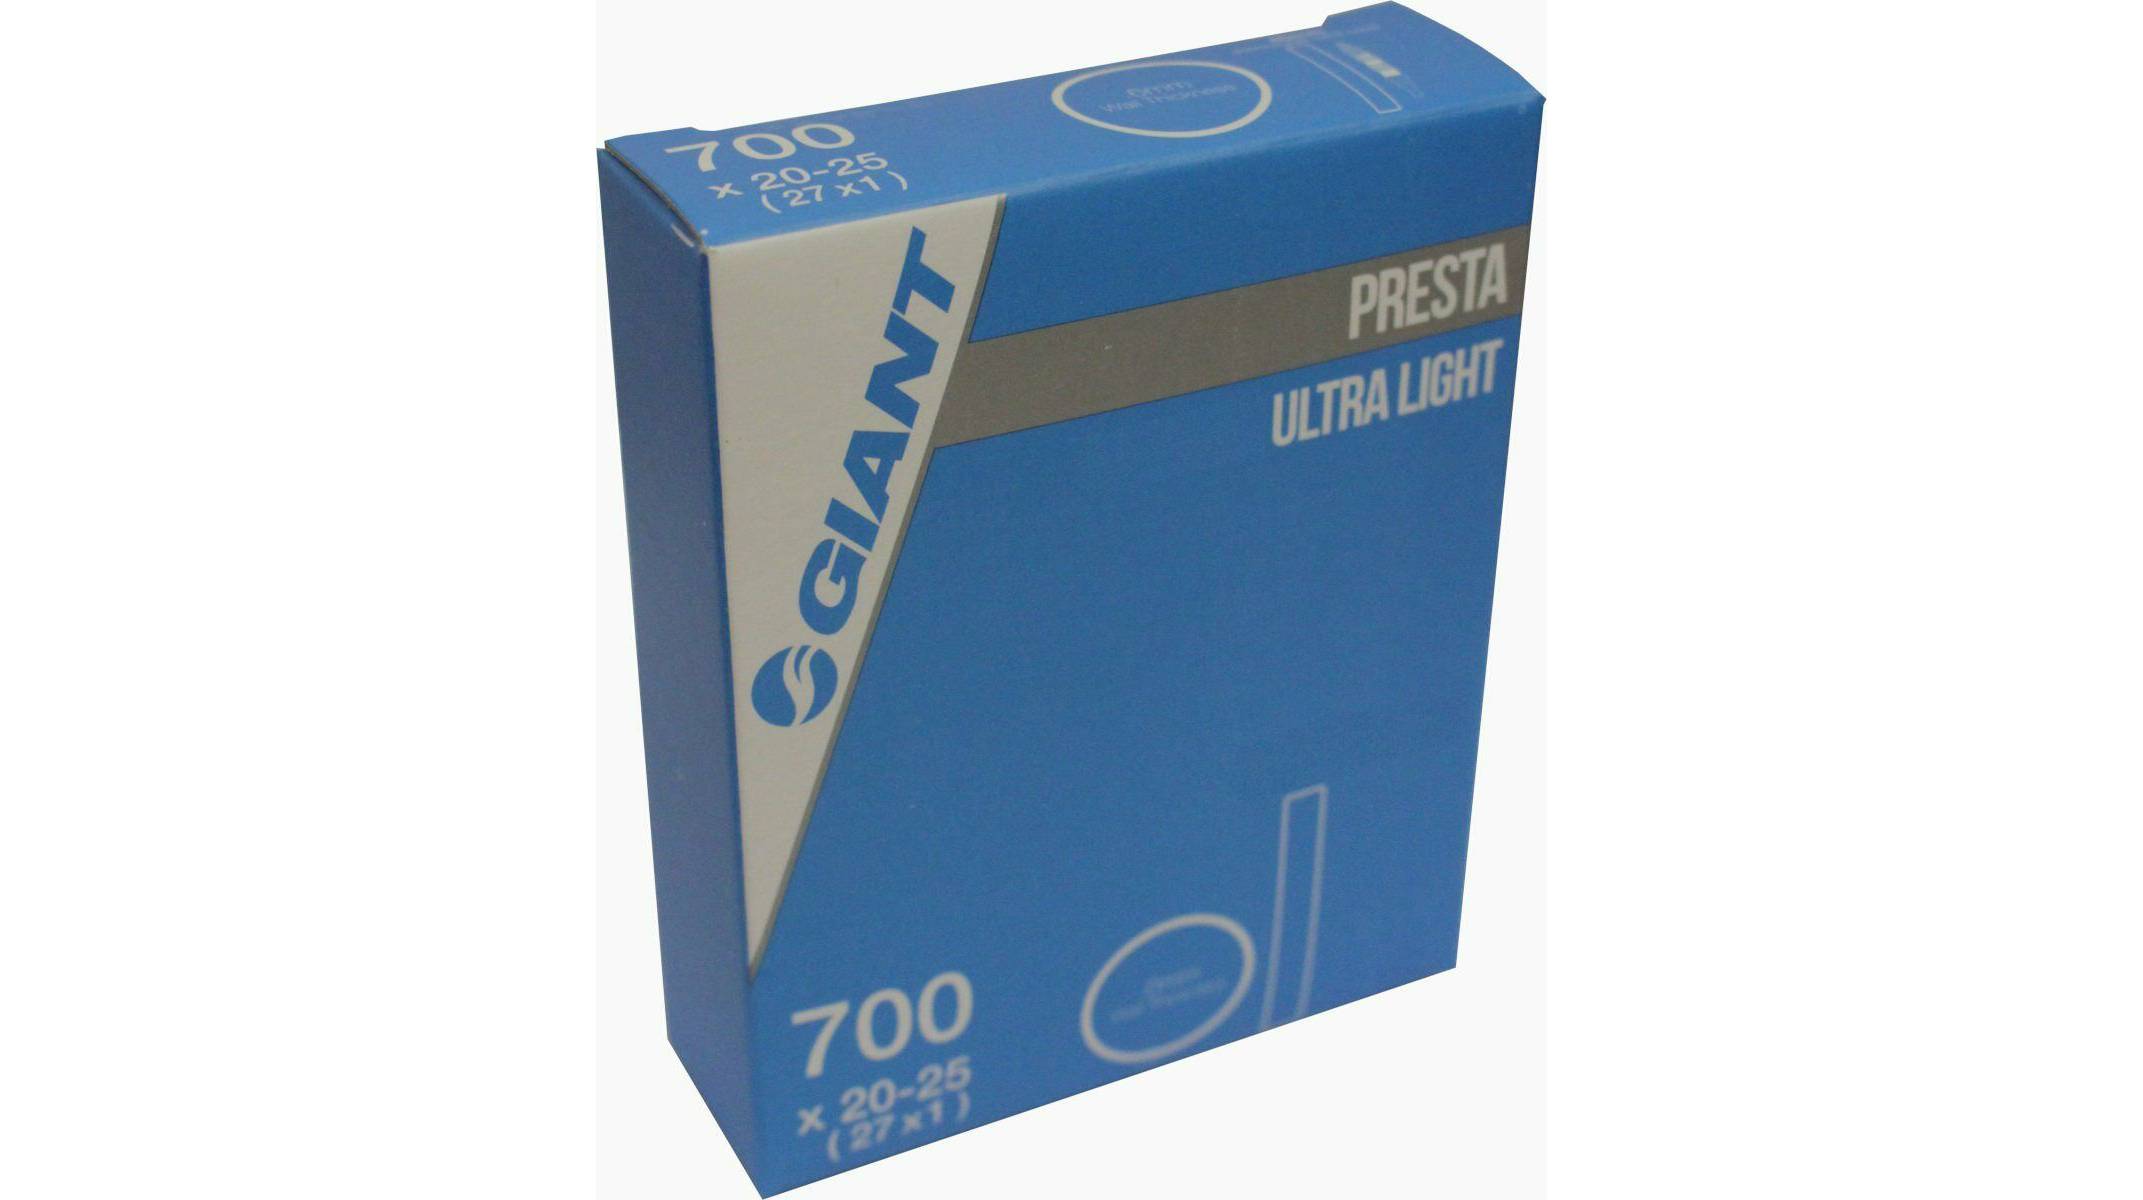 Камера Giant Ultra Light 700x20-25 FV (Presta) 60мм